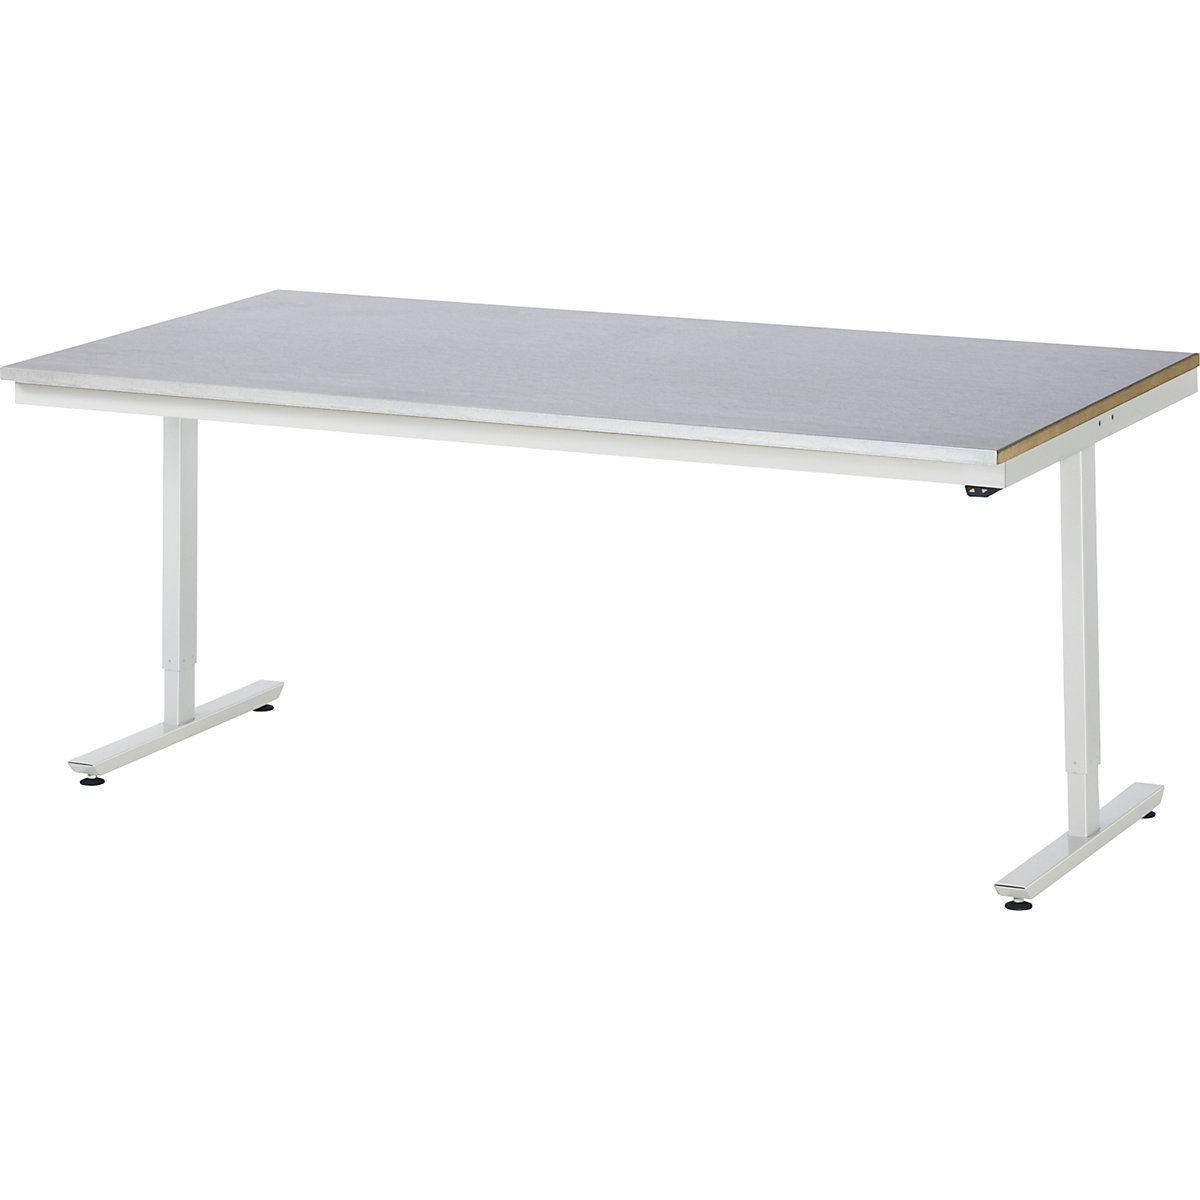 Psací stůl s elektrickým přestavováním výšky – RAU, ocelový povlak, nosnost 150 kg, š x h 2000 x 1000 mm-7